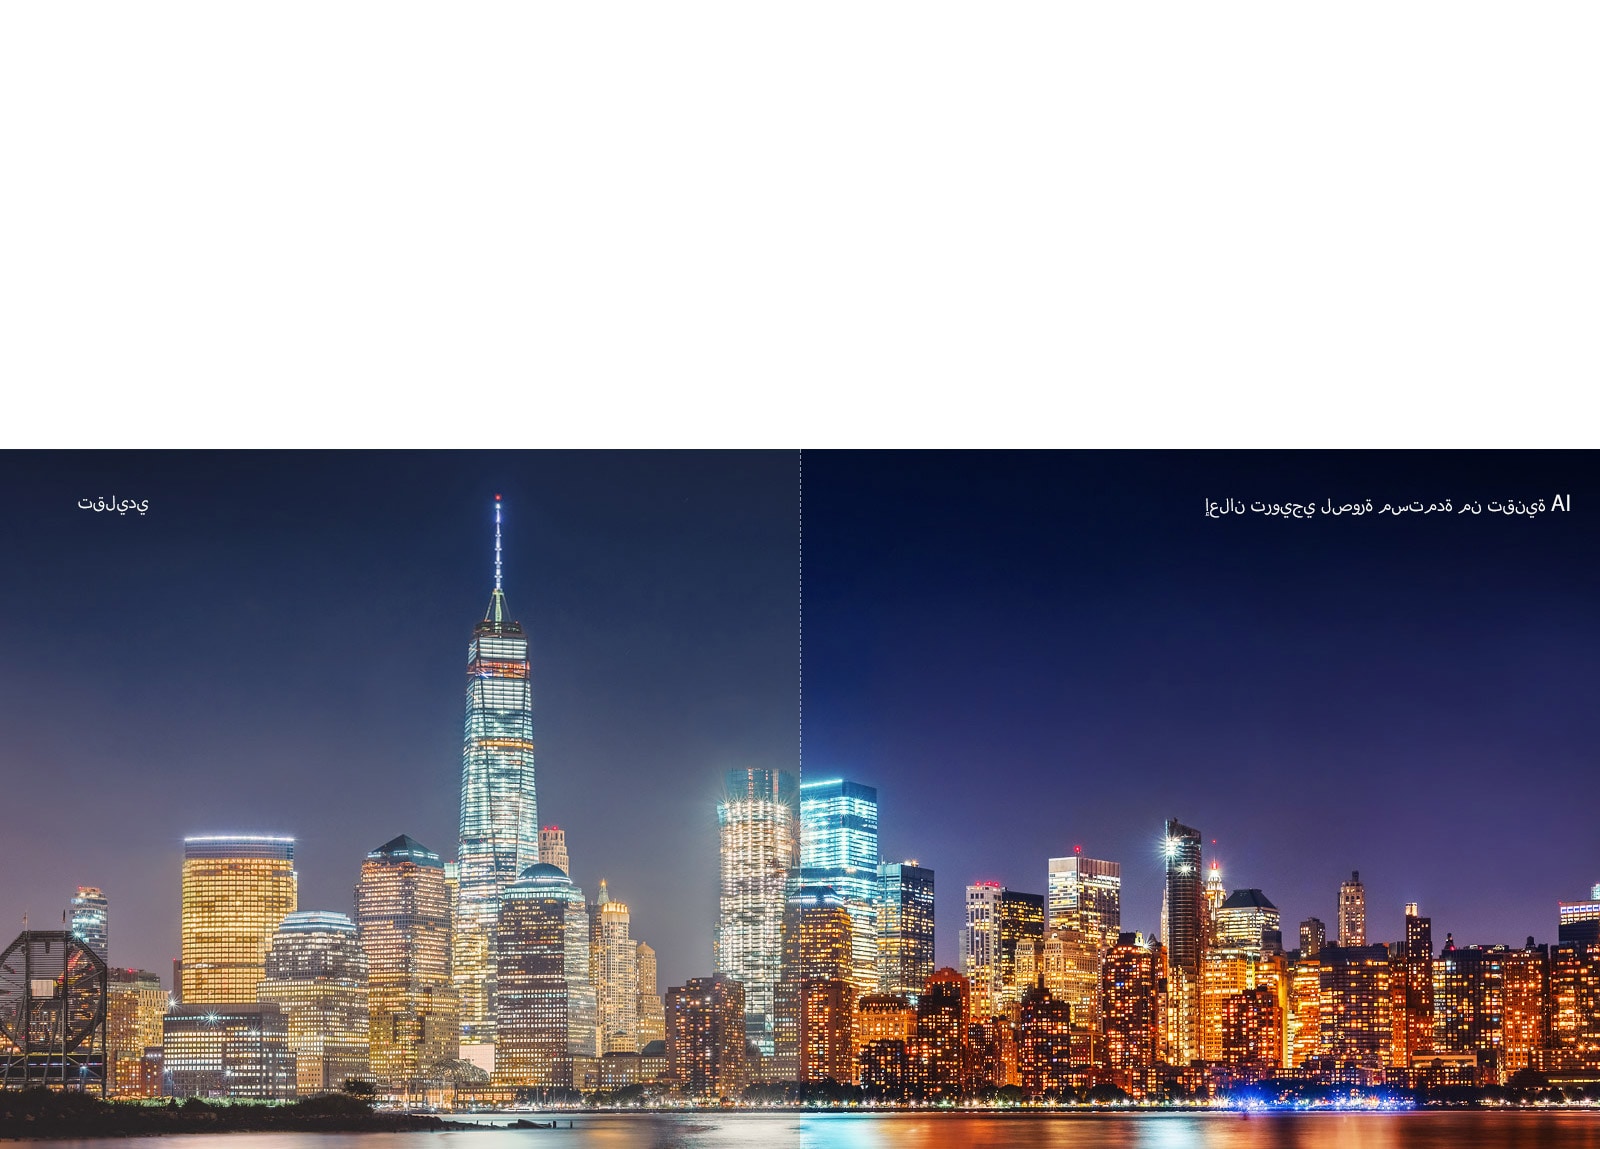 مقارنة جودة صورة لمنظر المدينة في الليل باستخدام شريط التمرير 